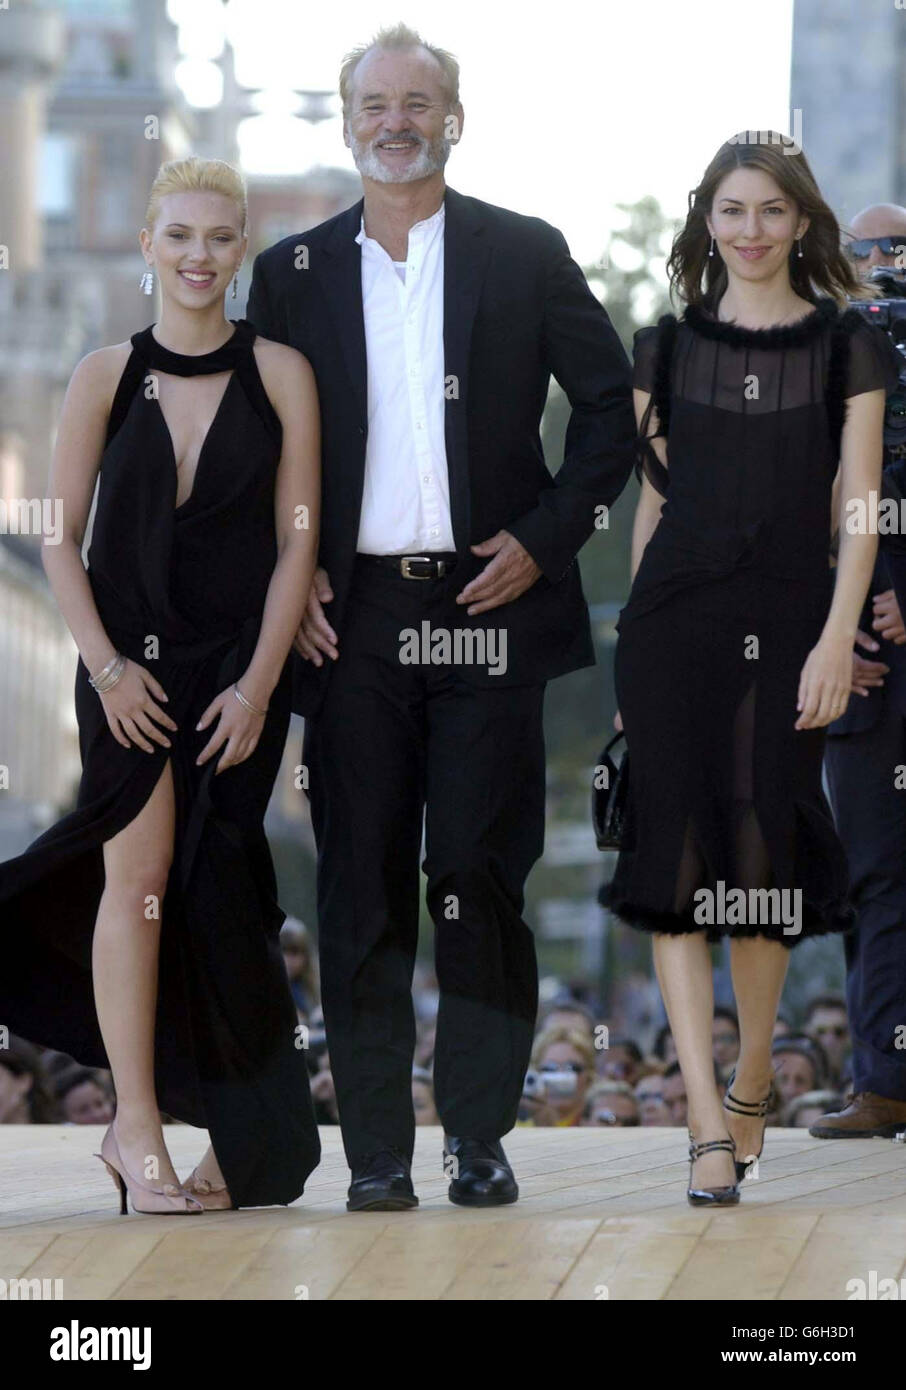 L'actrice Scarlett Johansson, l'actrice Bill Murray et la réalisatrice Sofia Coppola arrivent au Palazzo del Cinema de Venise pour la première de leur nouveau film "Lost in Translation" lors du 60ème Festival du film de Venise. Banque D'Images